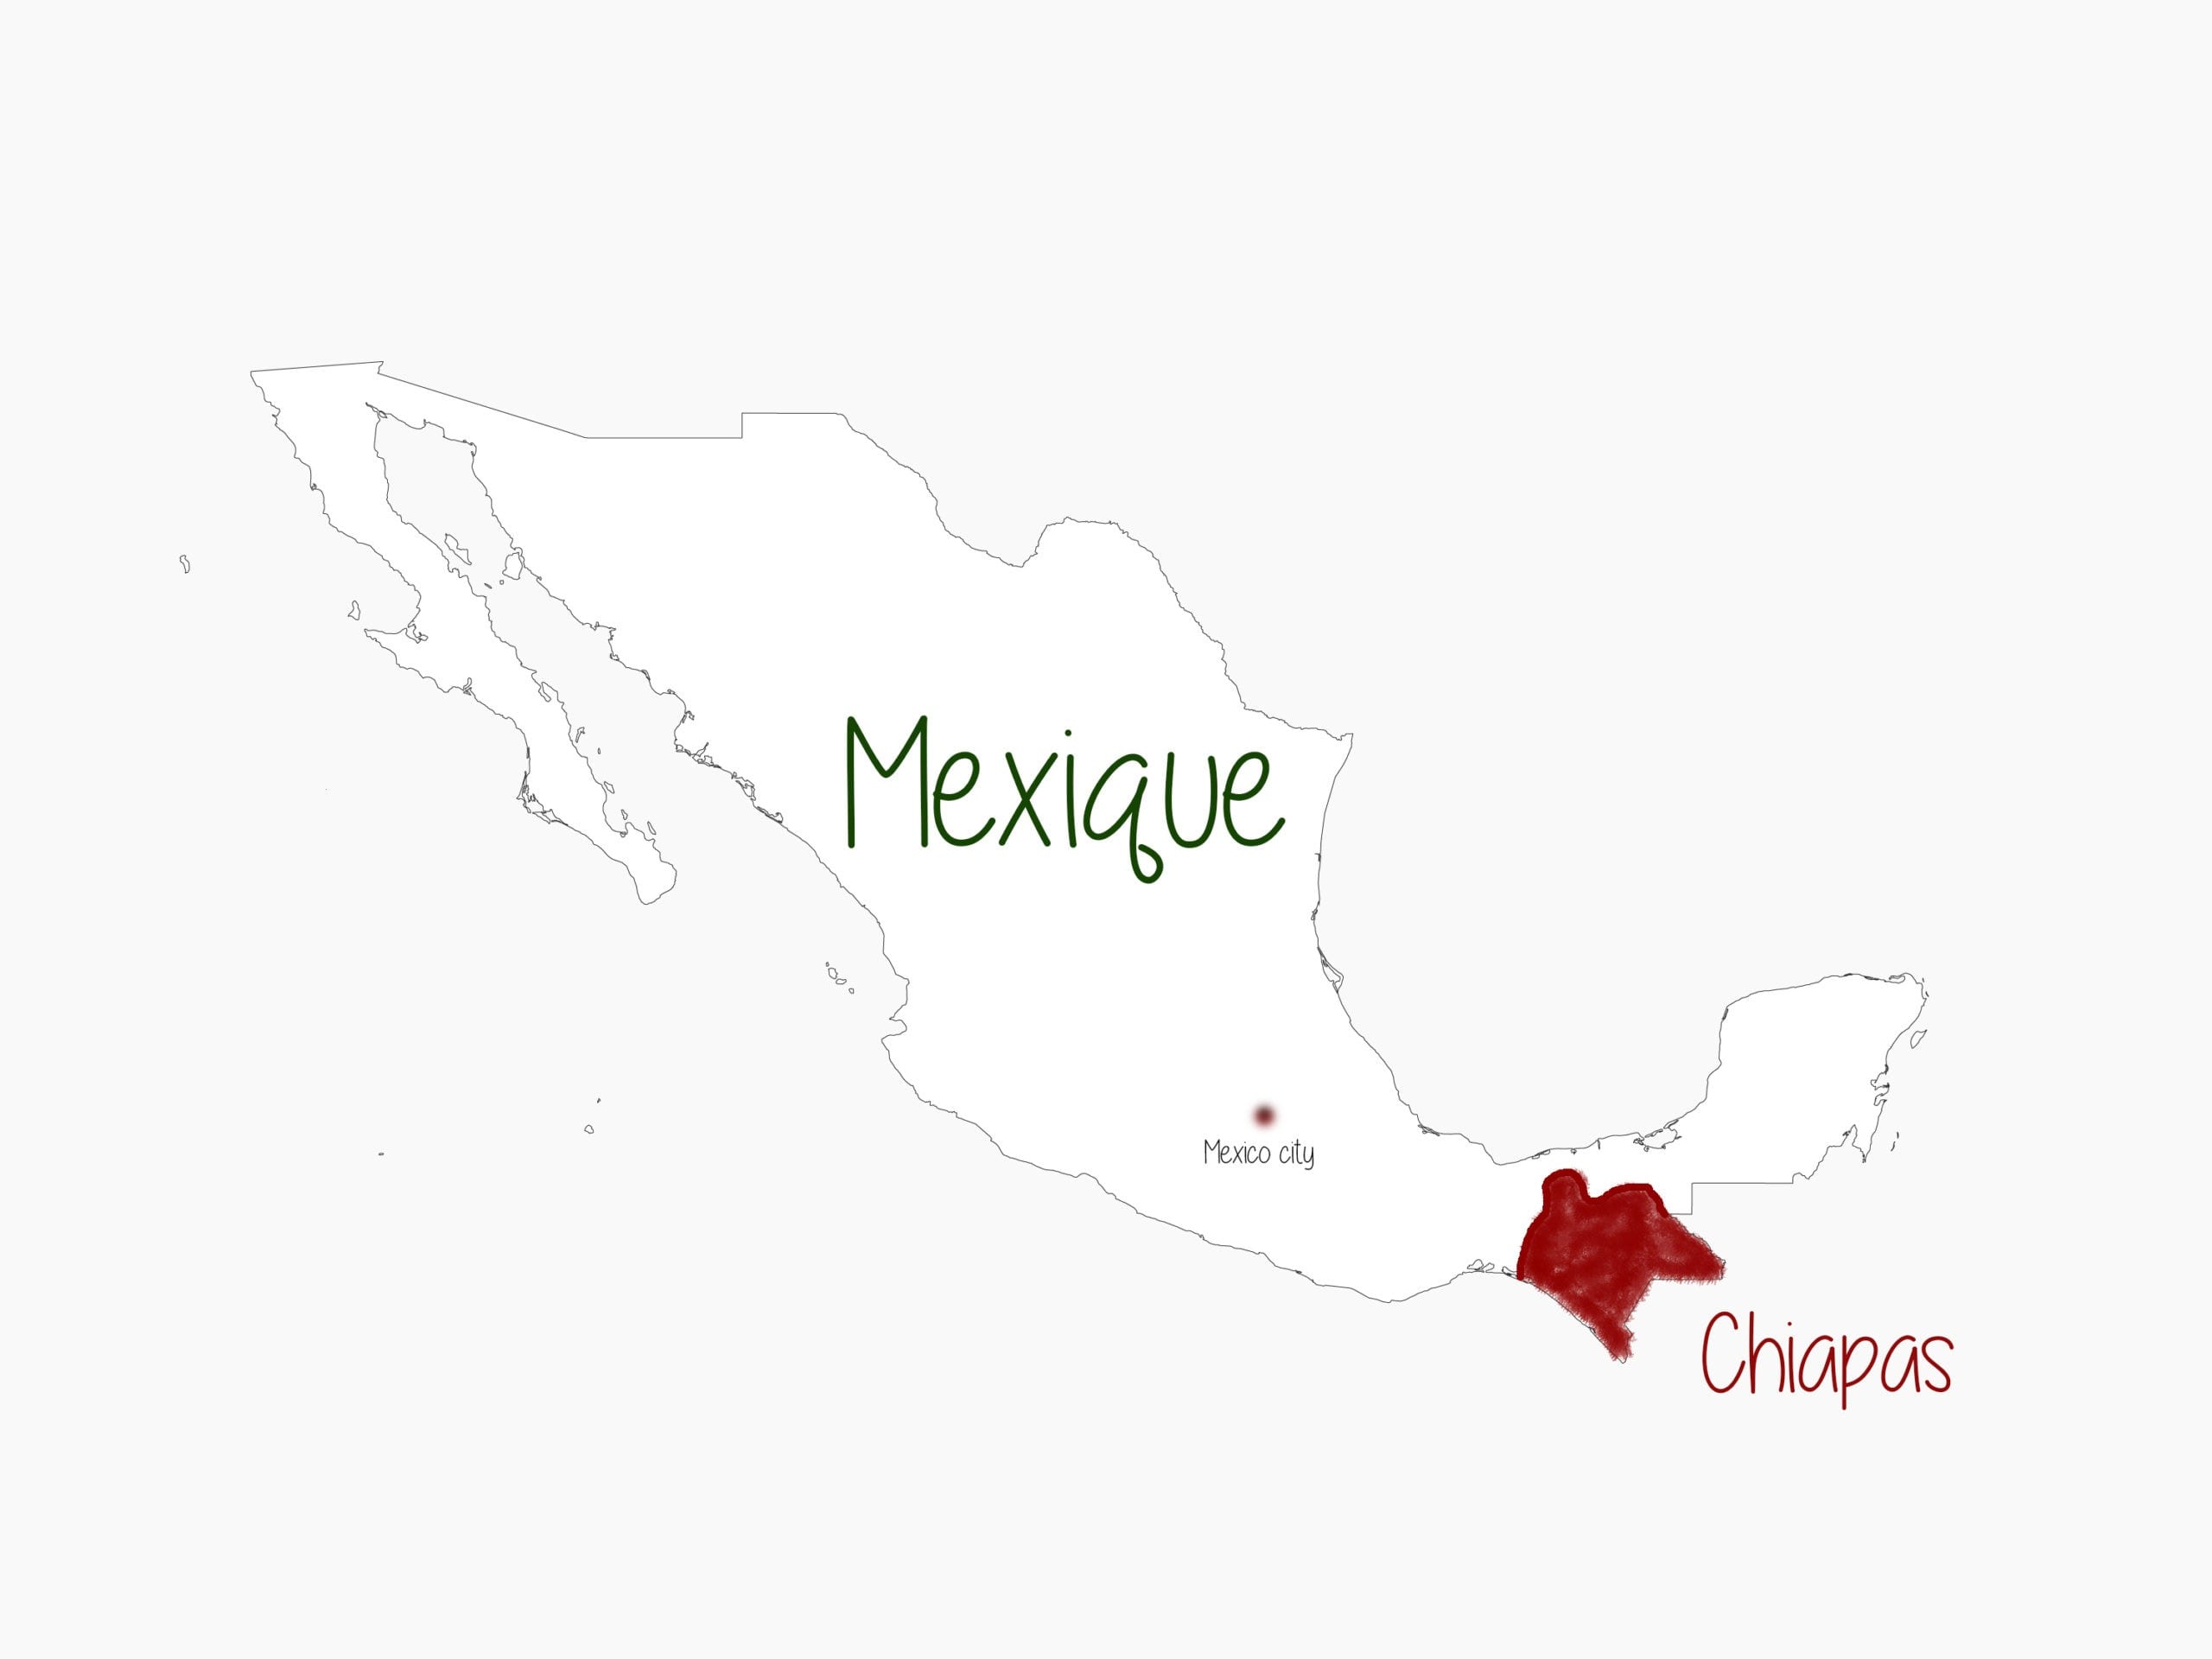 Visiter Chiapas Mexique Por el mundo voyages Itinéraire